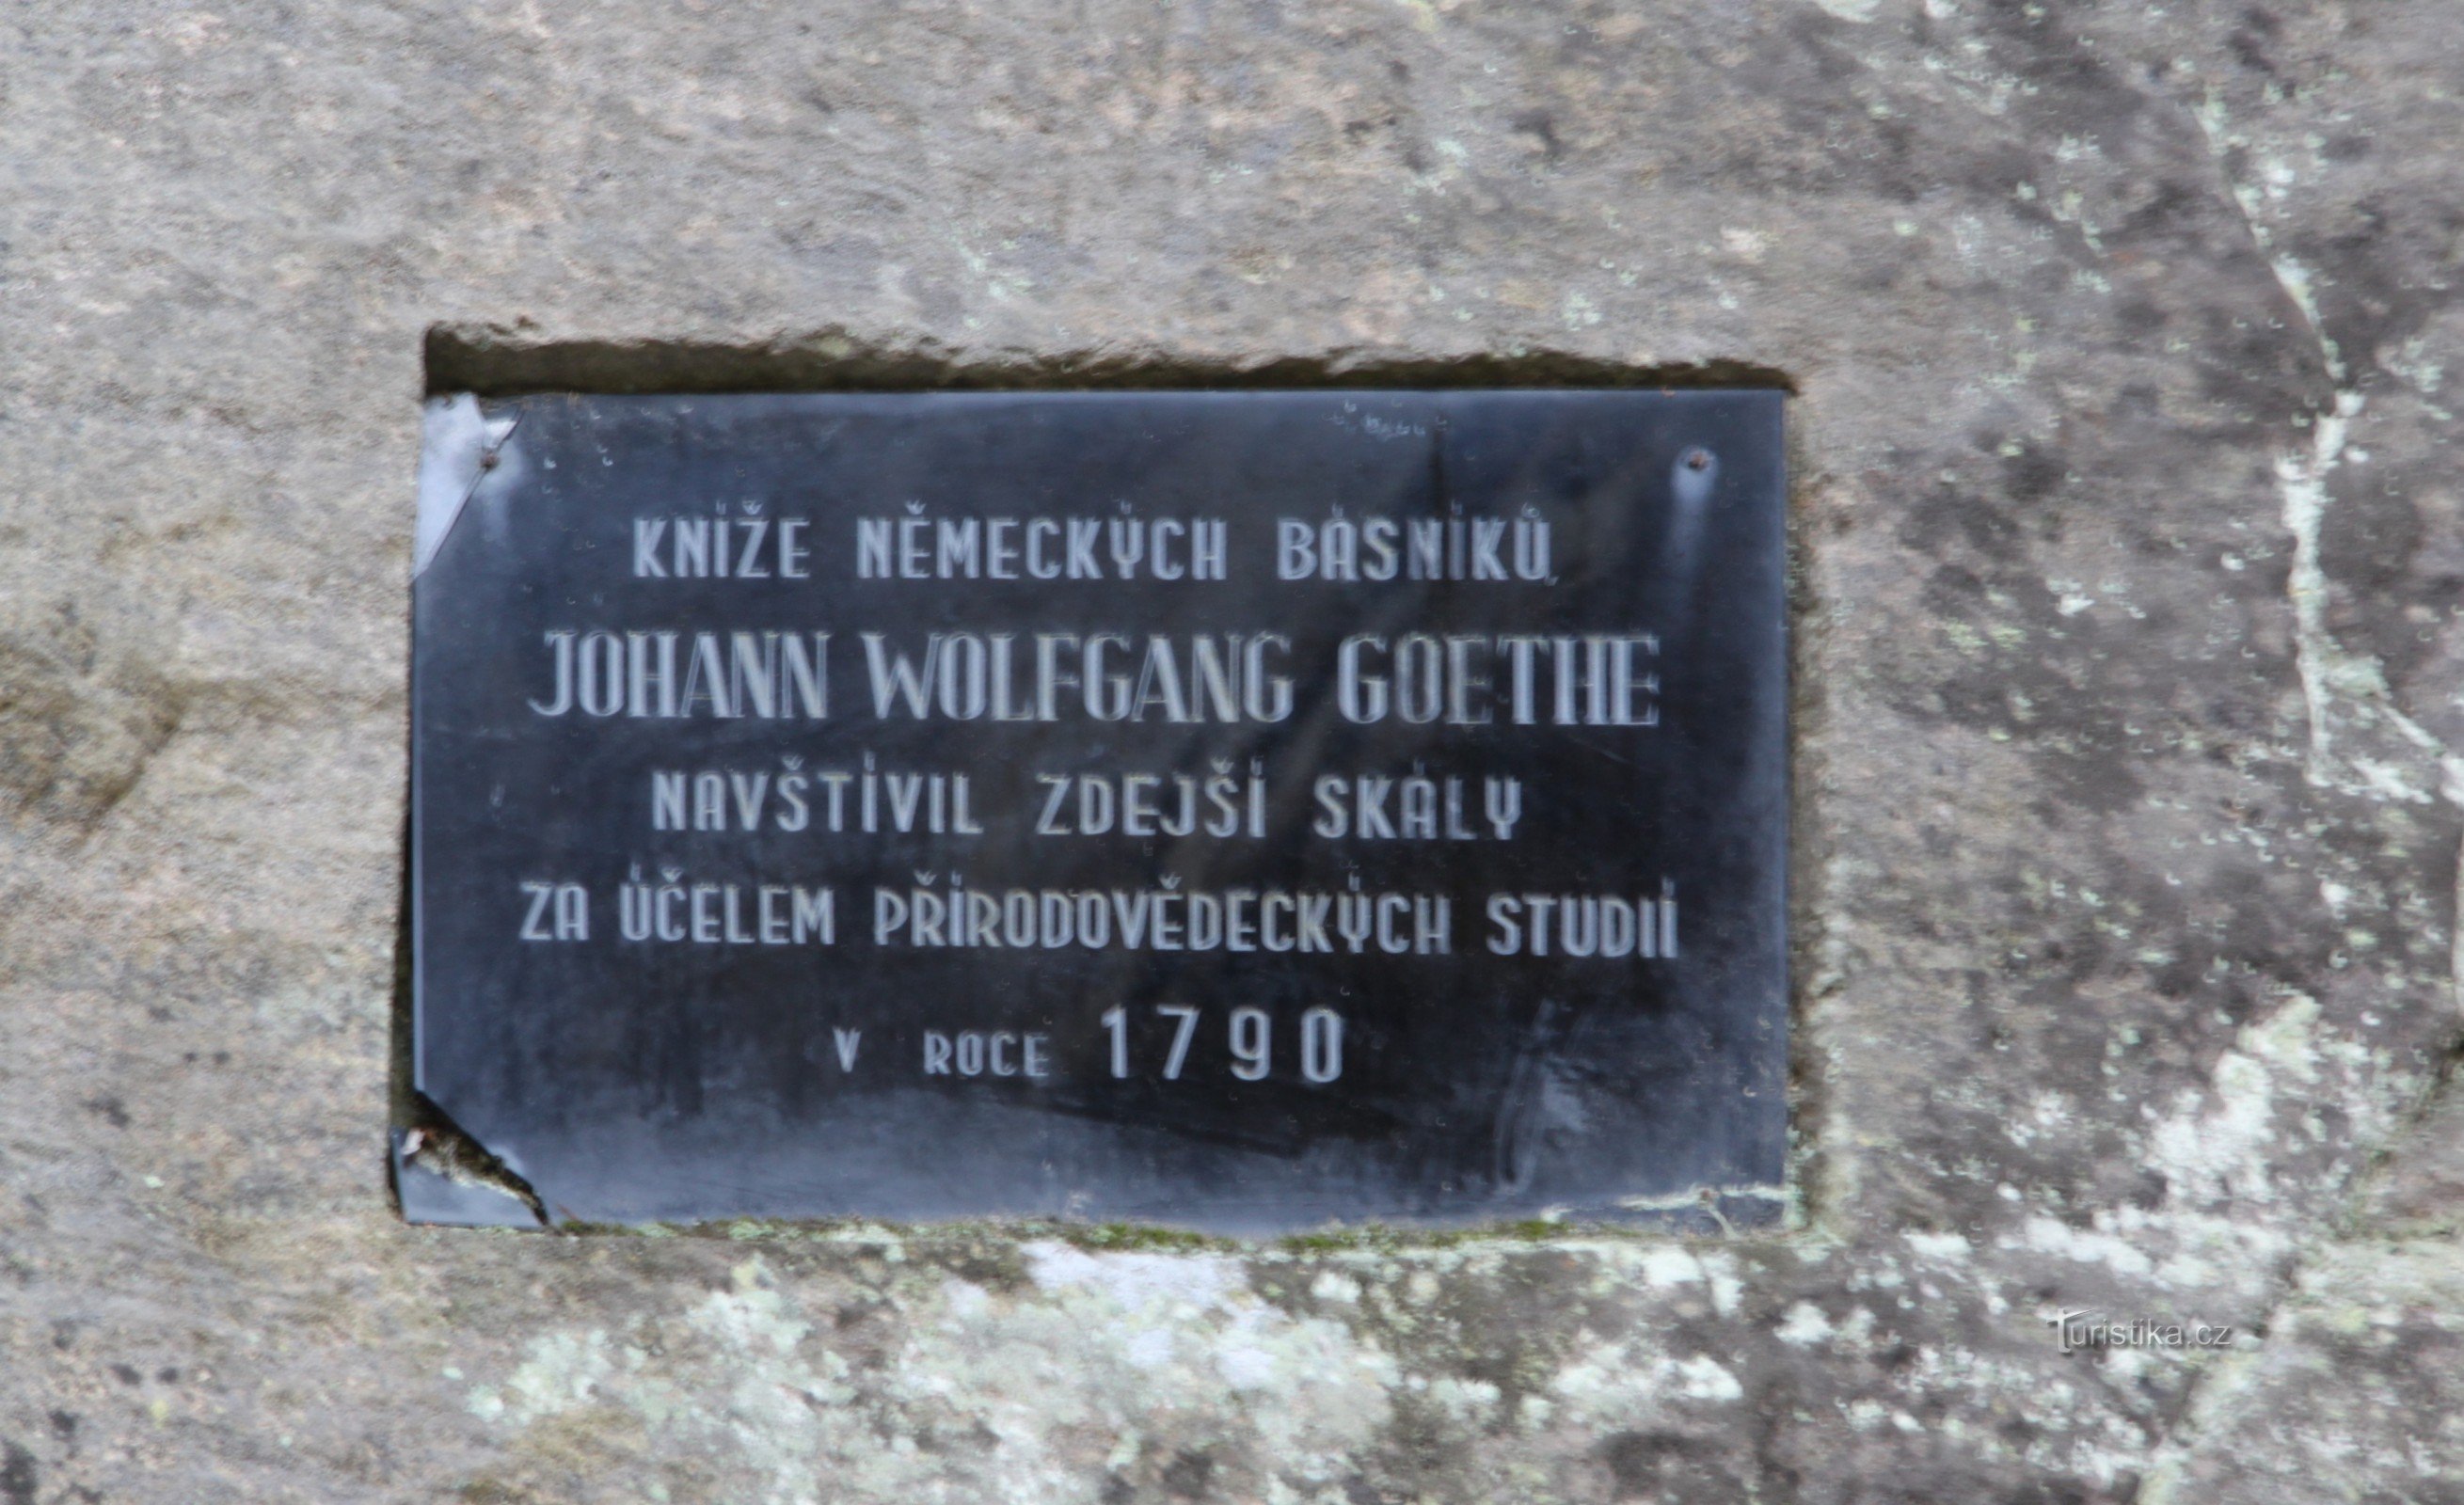 Μνημείο του JWGoethe στο Adršpach - η πλακέτα του Goethe